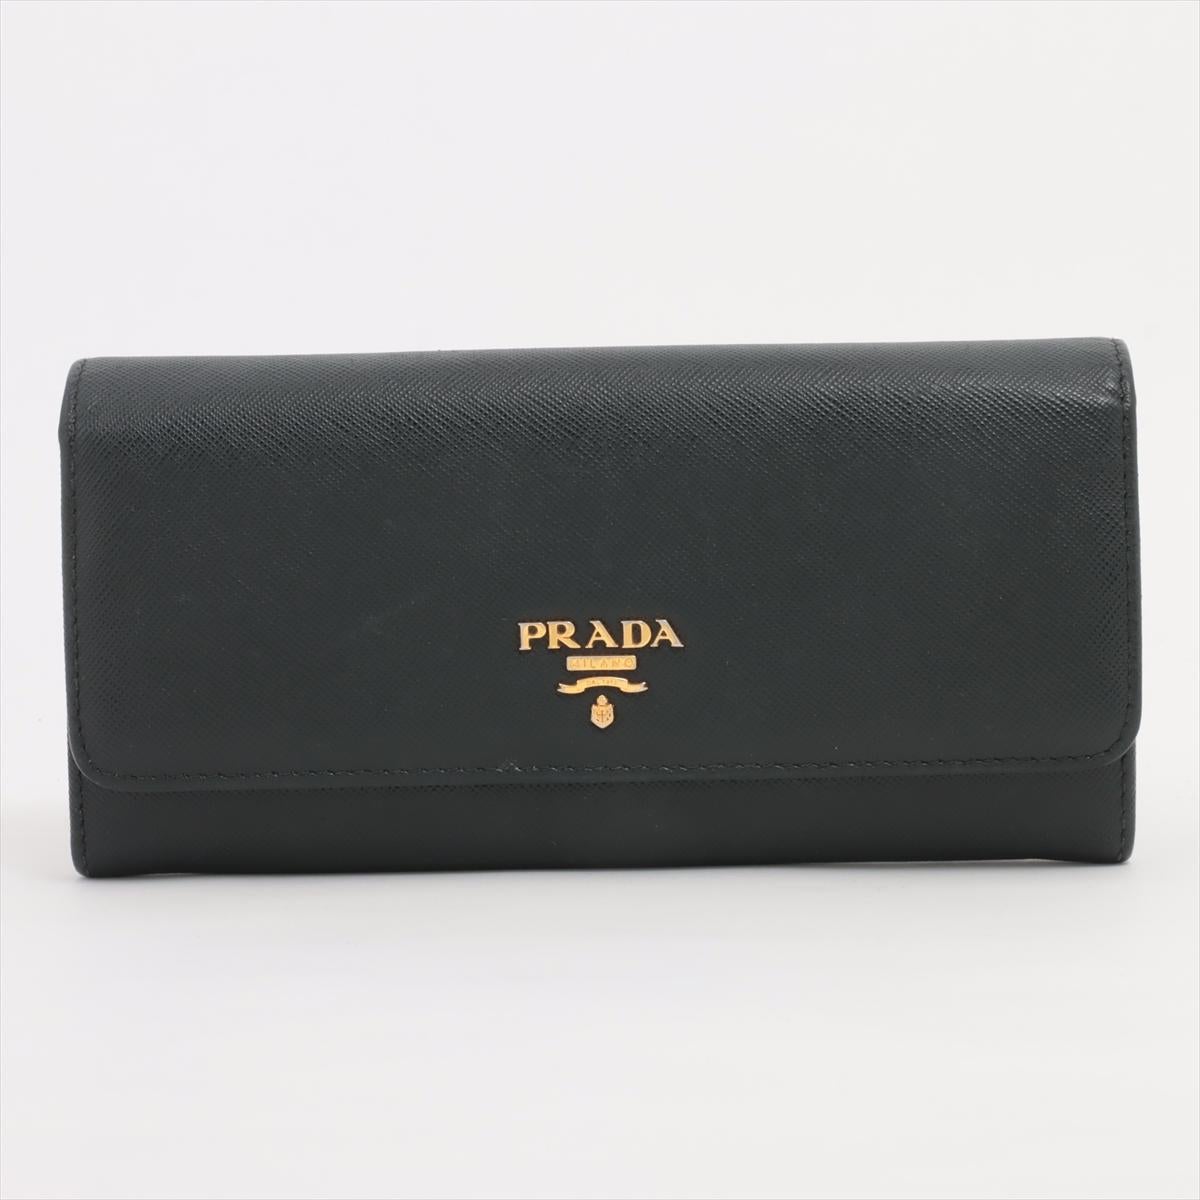 Le portefeuille long en cuir Saffiano de Prada, en noir, est un accessoire sophistiqué et intemporel conçu en cuir Saffiano de haute qualité. Réputé pour sa durabilité et sa texture hachurée distinctive, le cuir Saffiano ajoute une touche luxueuse